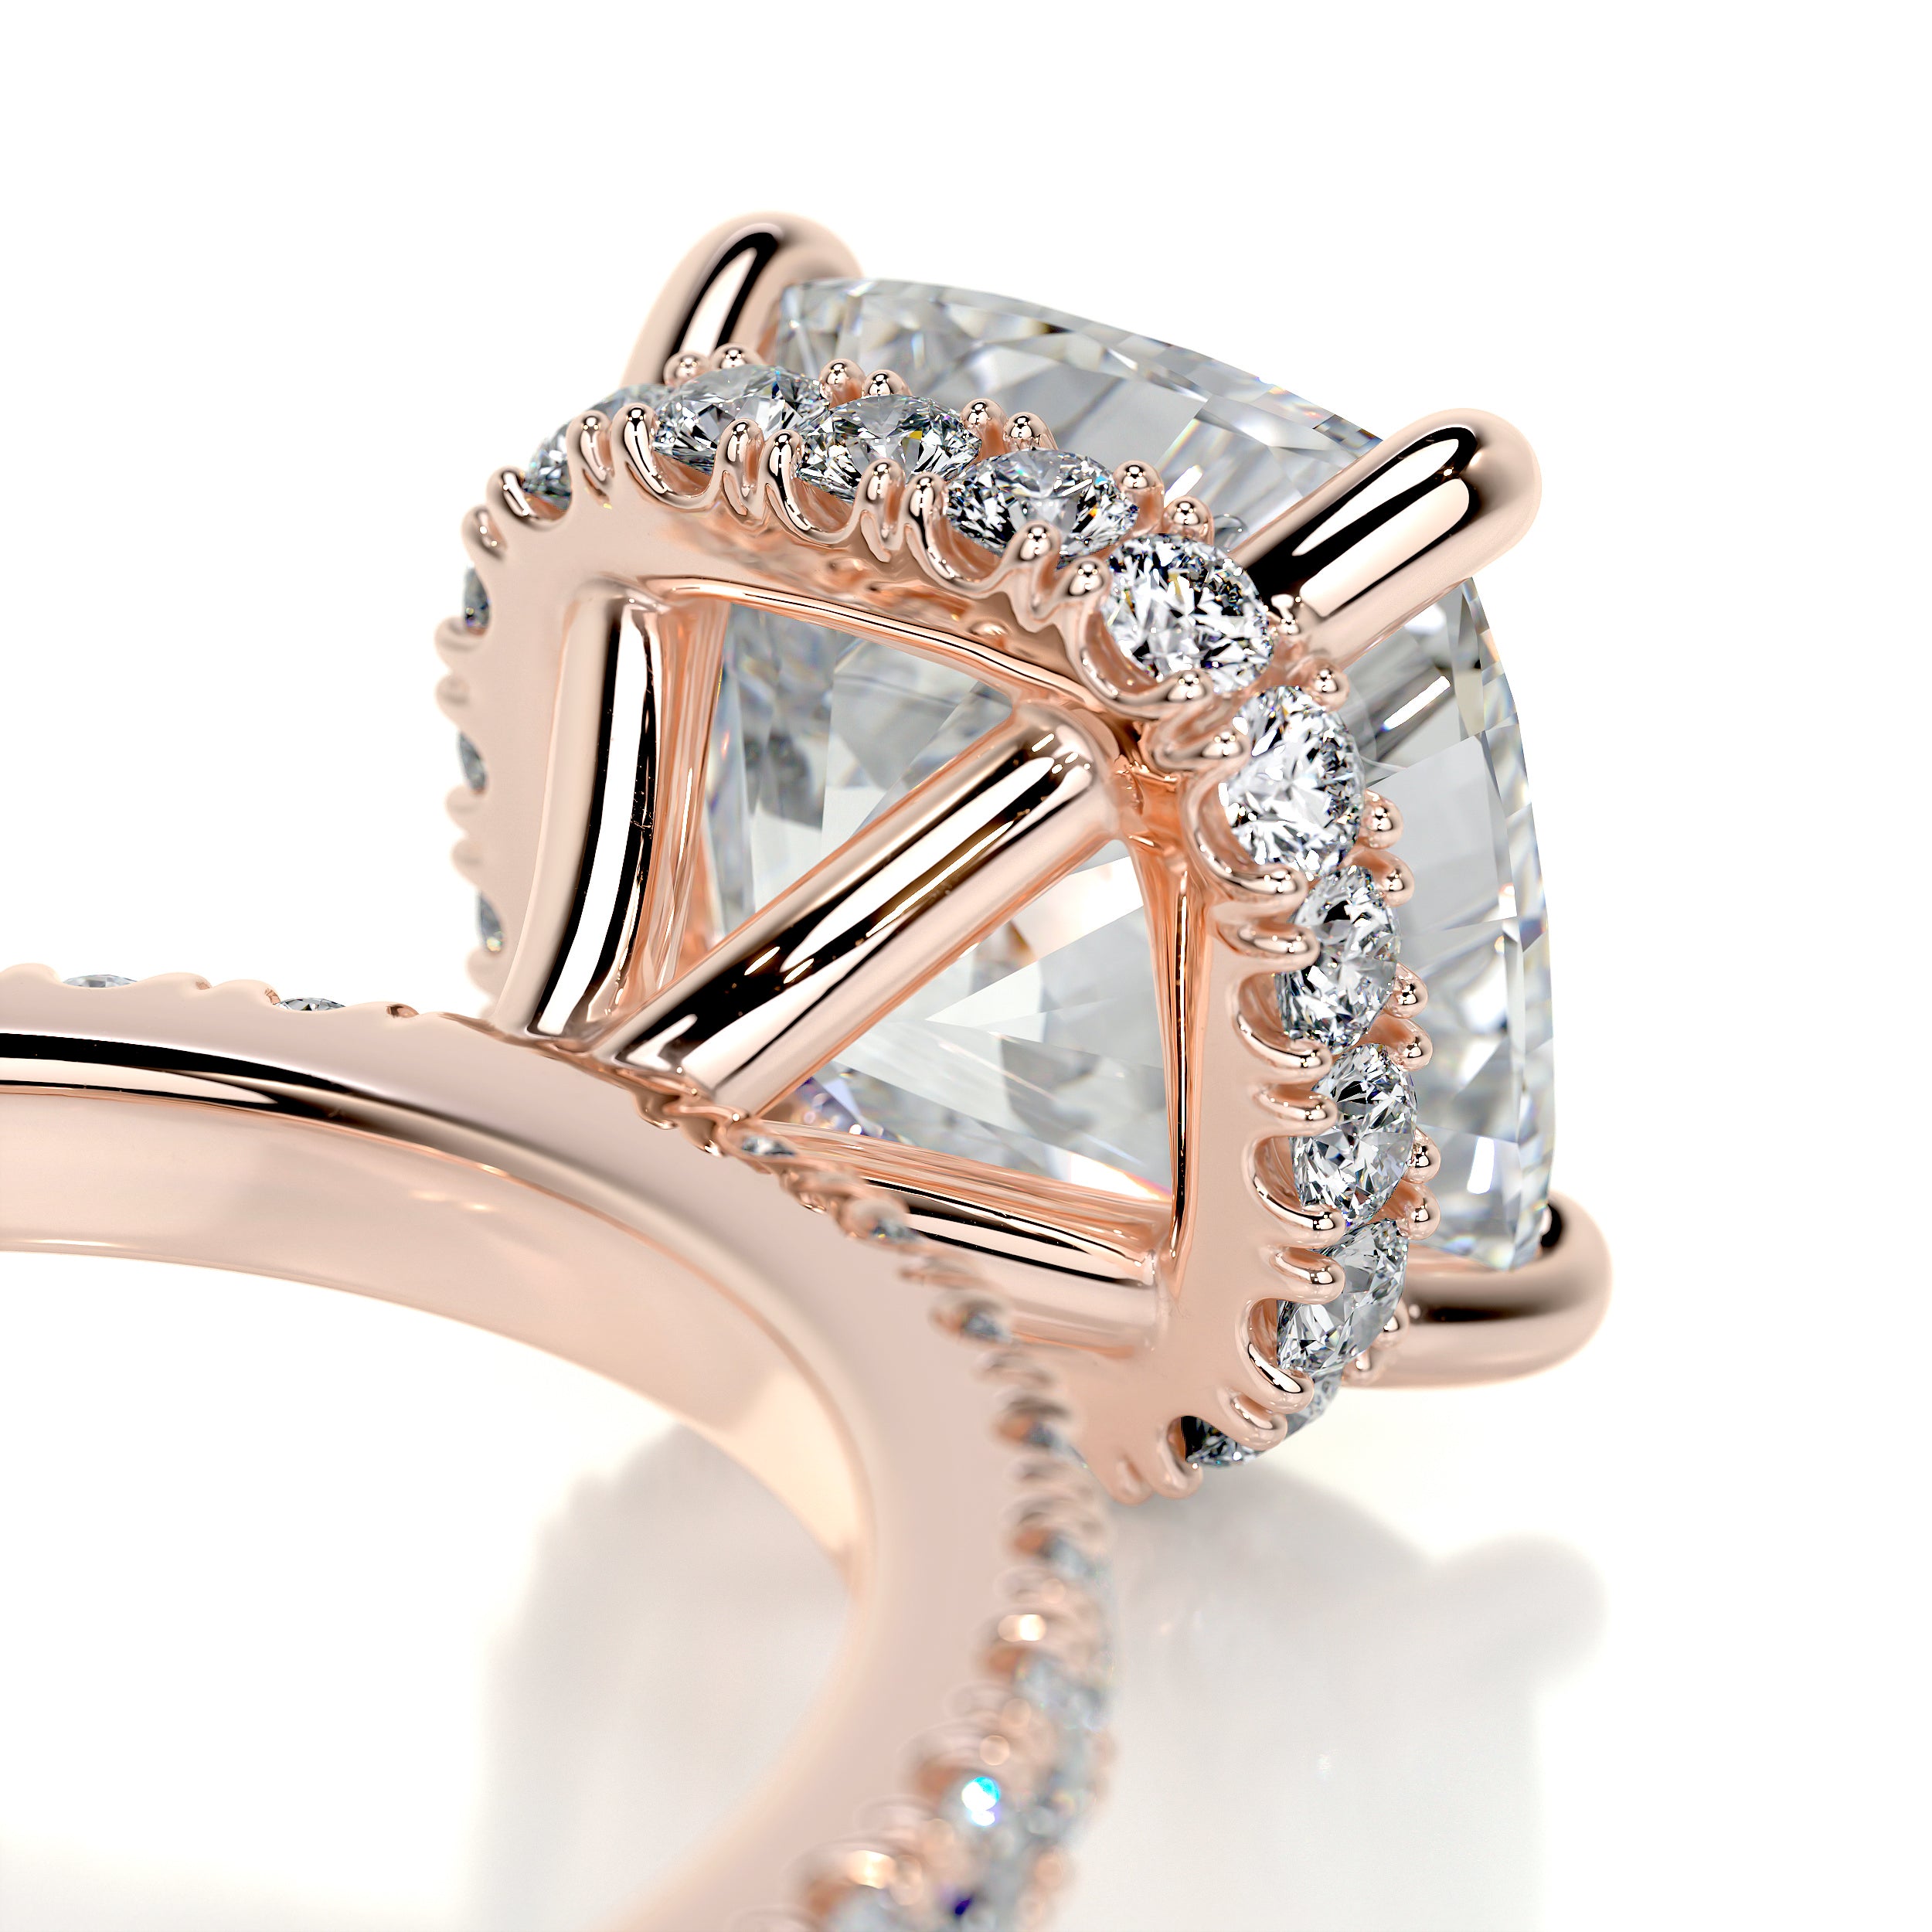 Madeline Diamond Engagement Ring -14K Rose Gold